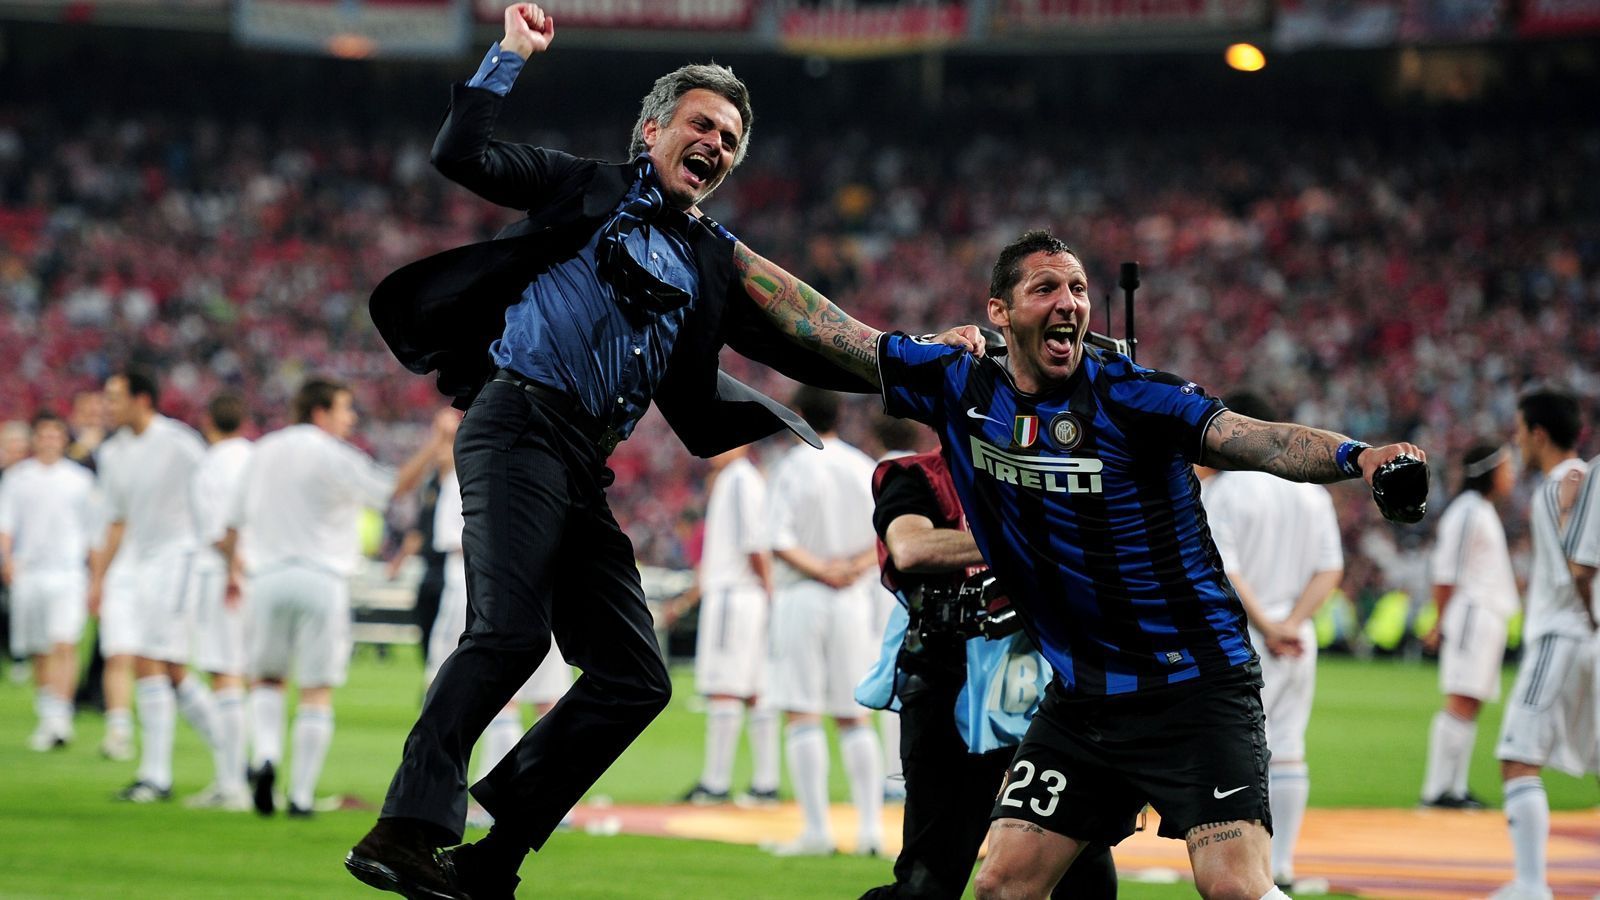 
                <strong>Jose Mourinho bei Inter Mailand</strong><br>
                Einmal umgeht Mourinho das verflixte dritte Jahr - nämlich bei Inter Mailand. Dort unterschreibt er im Sommer 2008 - der Beginn einer Erfolgsgeschichte! Zwei Mal in Folge führt der Portugiese die Italiener zum Scudetto, zudem zu einem Pokalsieg und 2010 sogar zum Champions-League-Titel. Im Finale schlägt Inter Mailand den FC Bayern München in Madrid durch zwei Treffer von Diego Milito mit 2:0. Zuvor schalten Mourinho und seine Defensiv-Künstler sogar den FC Barcelona aus. Nach dem Triumph im Santiago Bernabeu verlässt er die "Nerazzurri" nach nur zwei Spielzeiten - um in Madrid dann wieder zum verflixten dritten Jahr zurückzukehren!
              